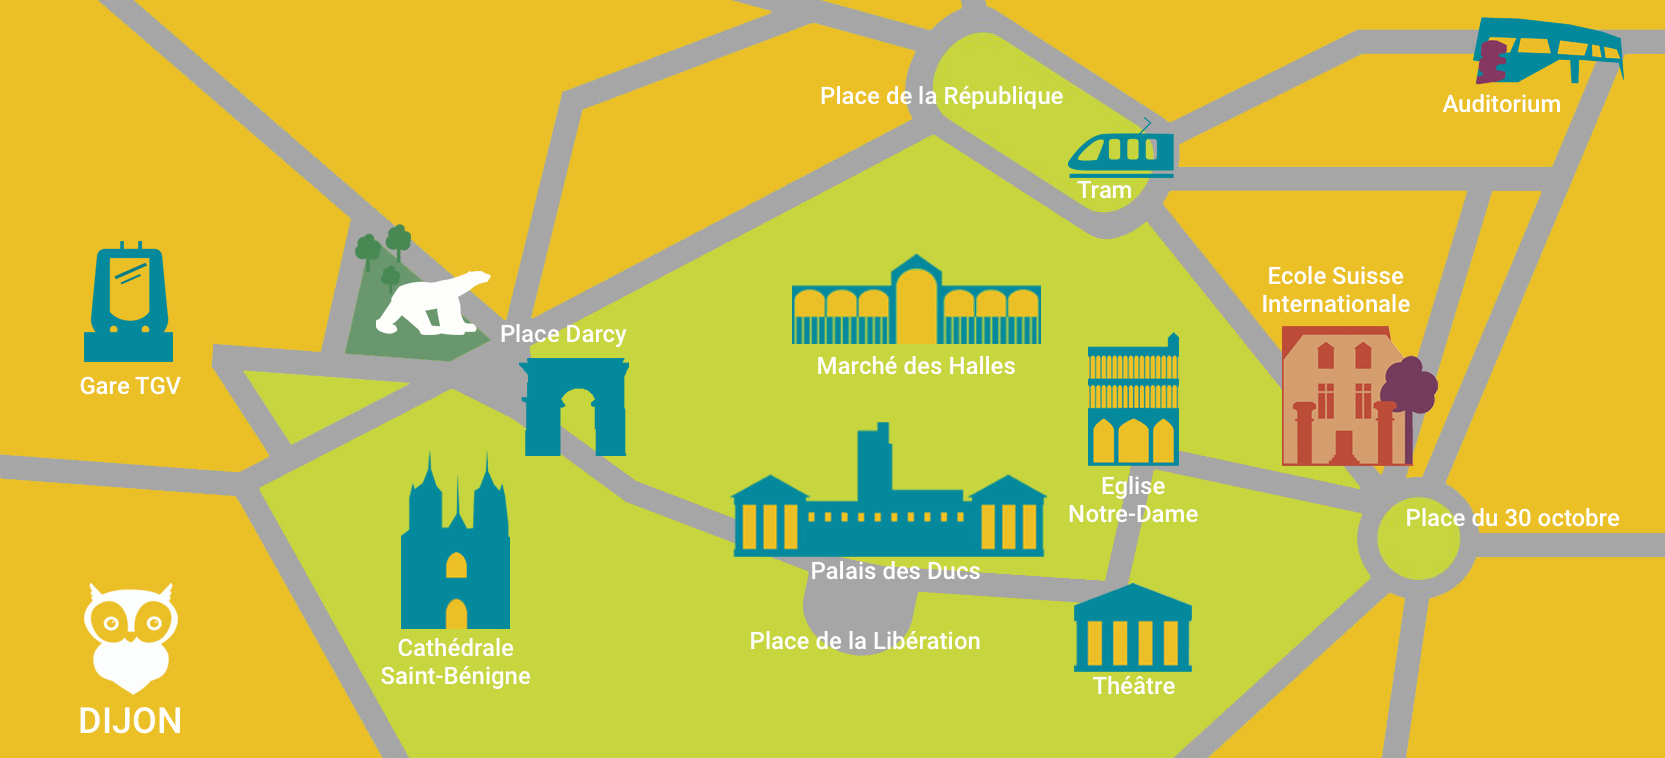 Plan de situation Ecole Suisse Internationale à Dijon